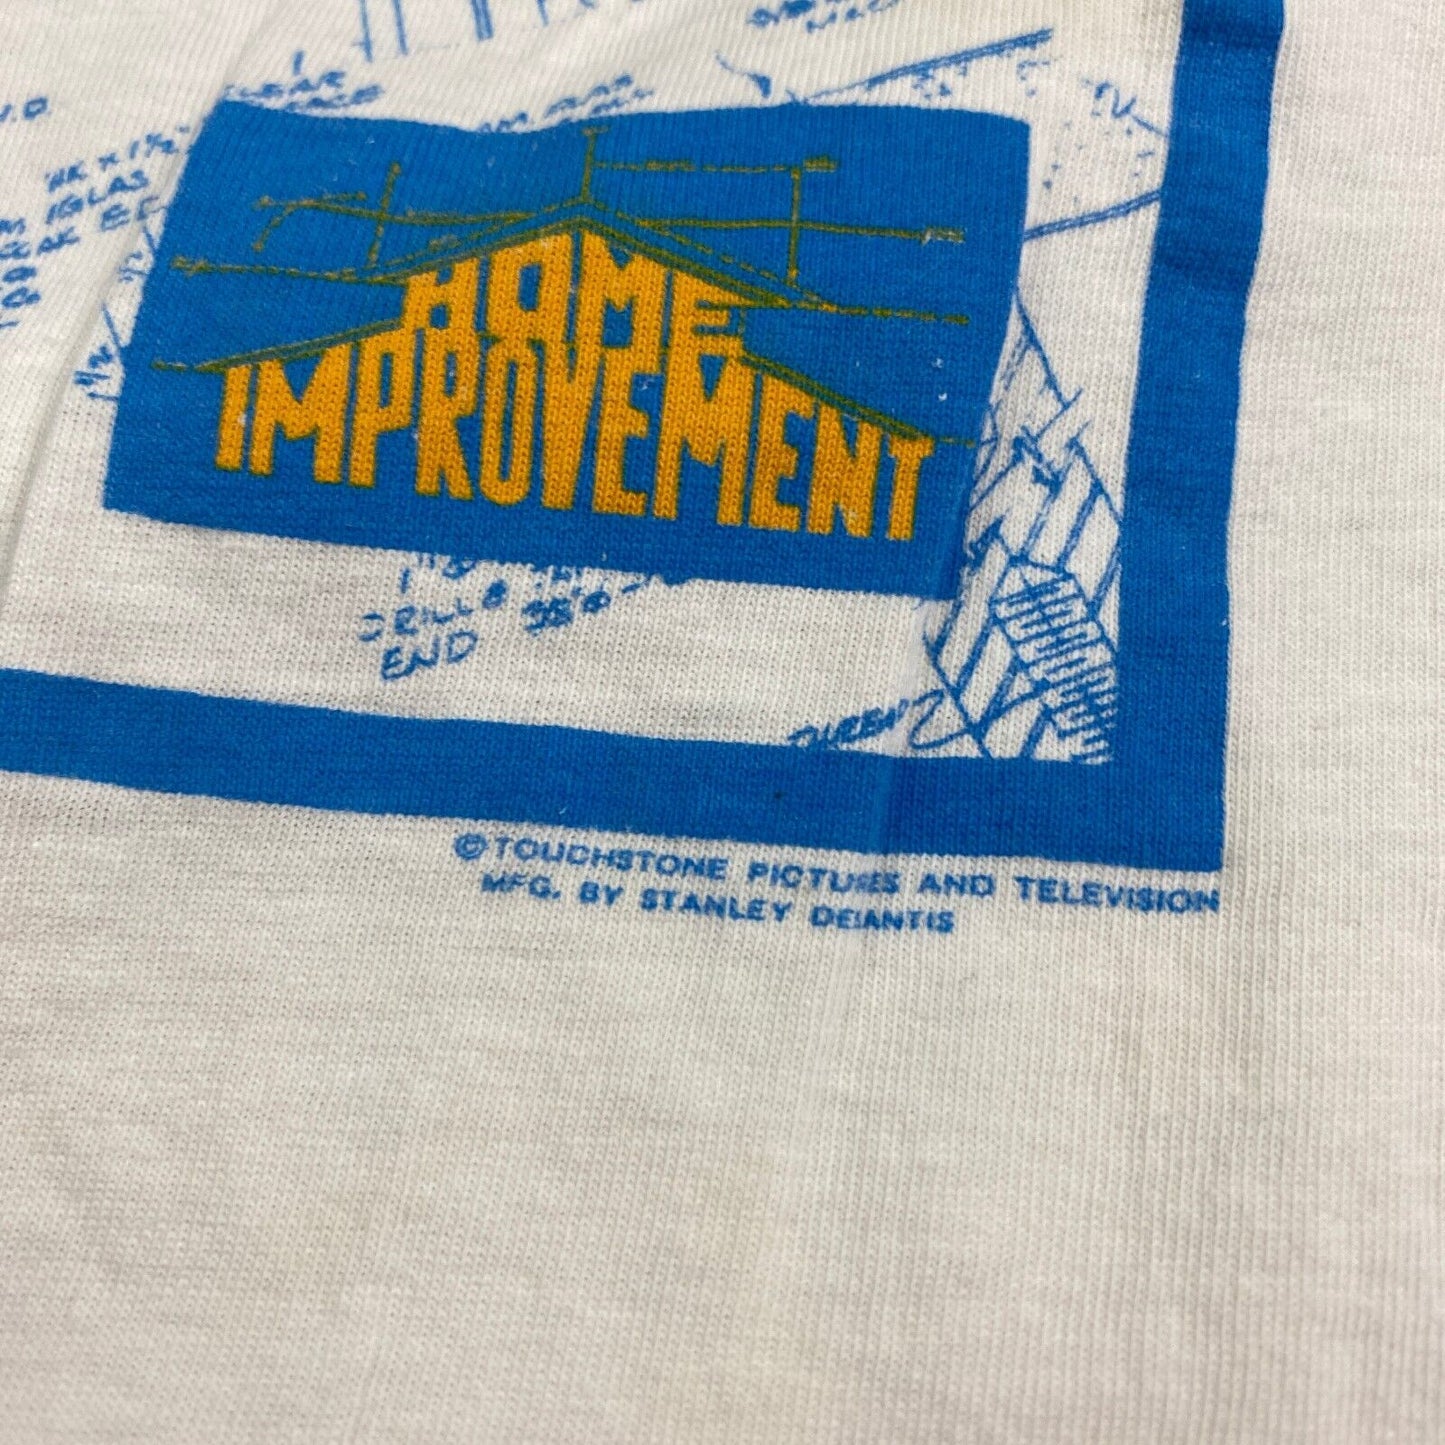 VINTAGE 90s Just Fix It Home Improvement White T-Shirt sz Large Men Adult